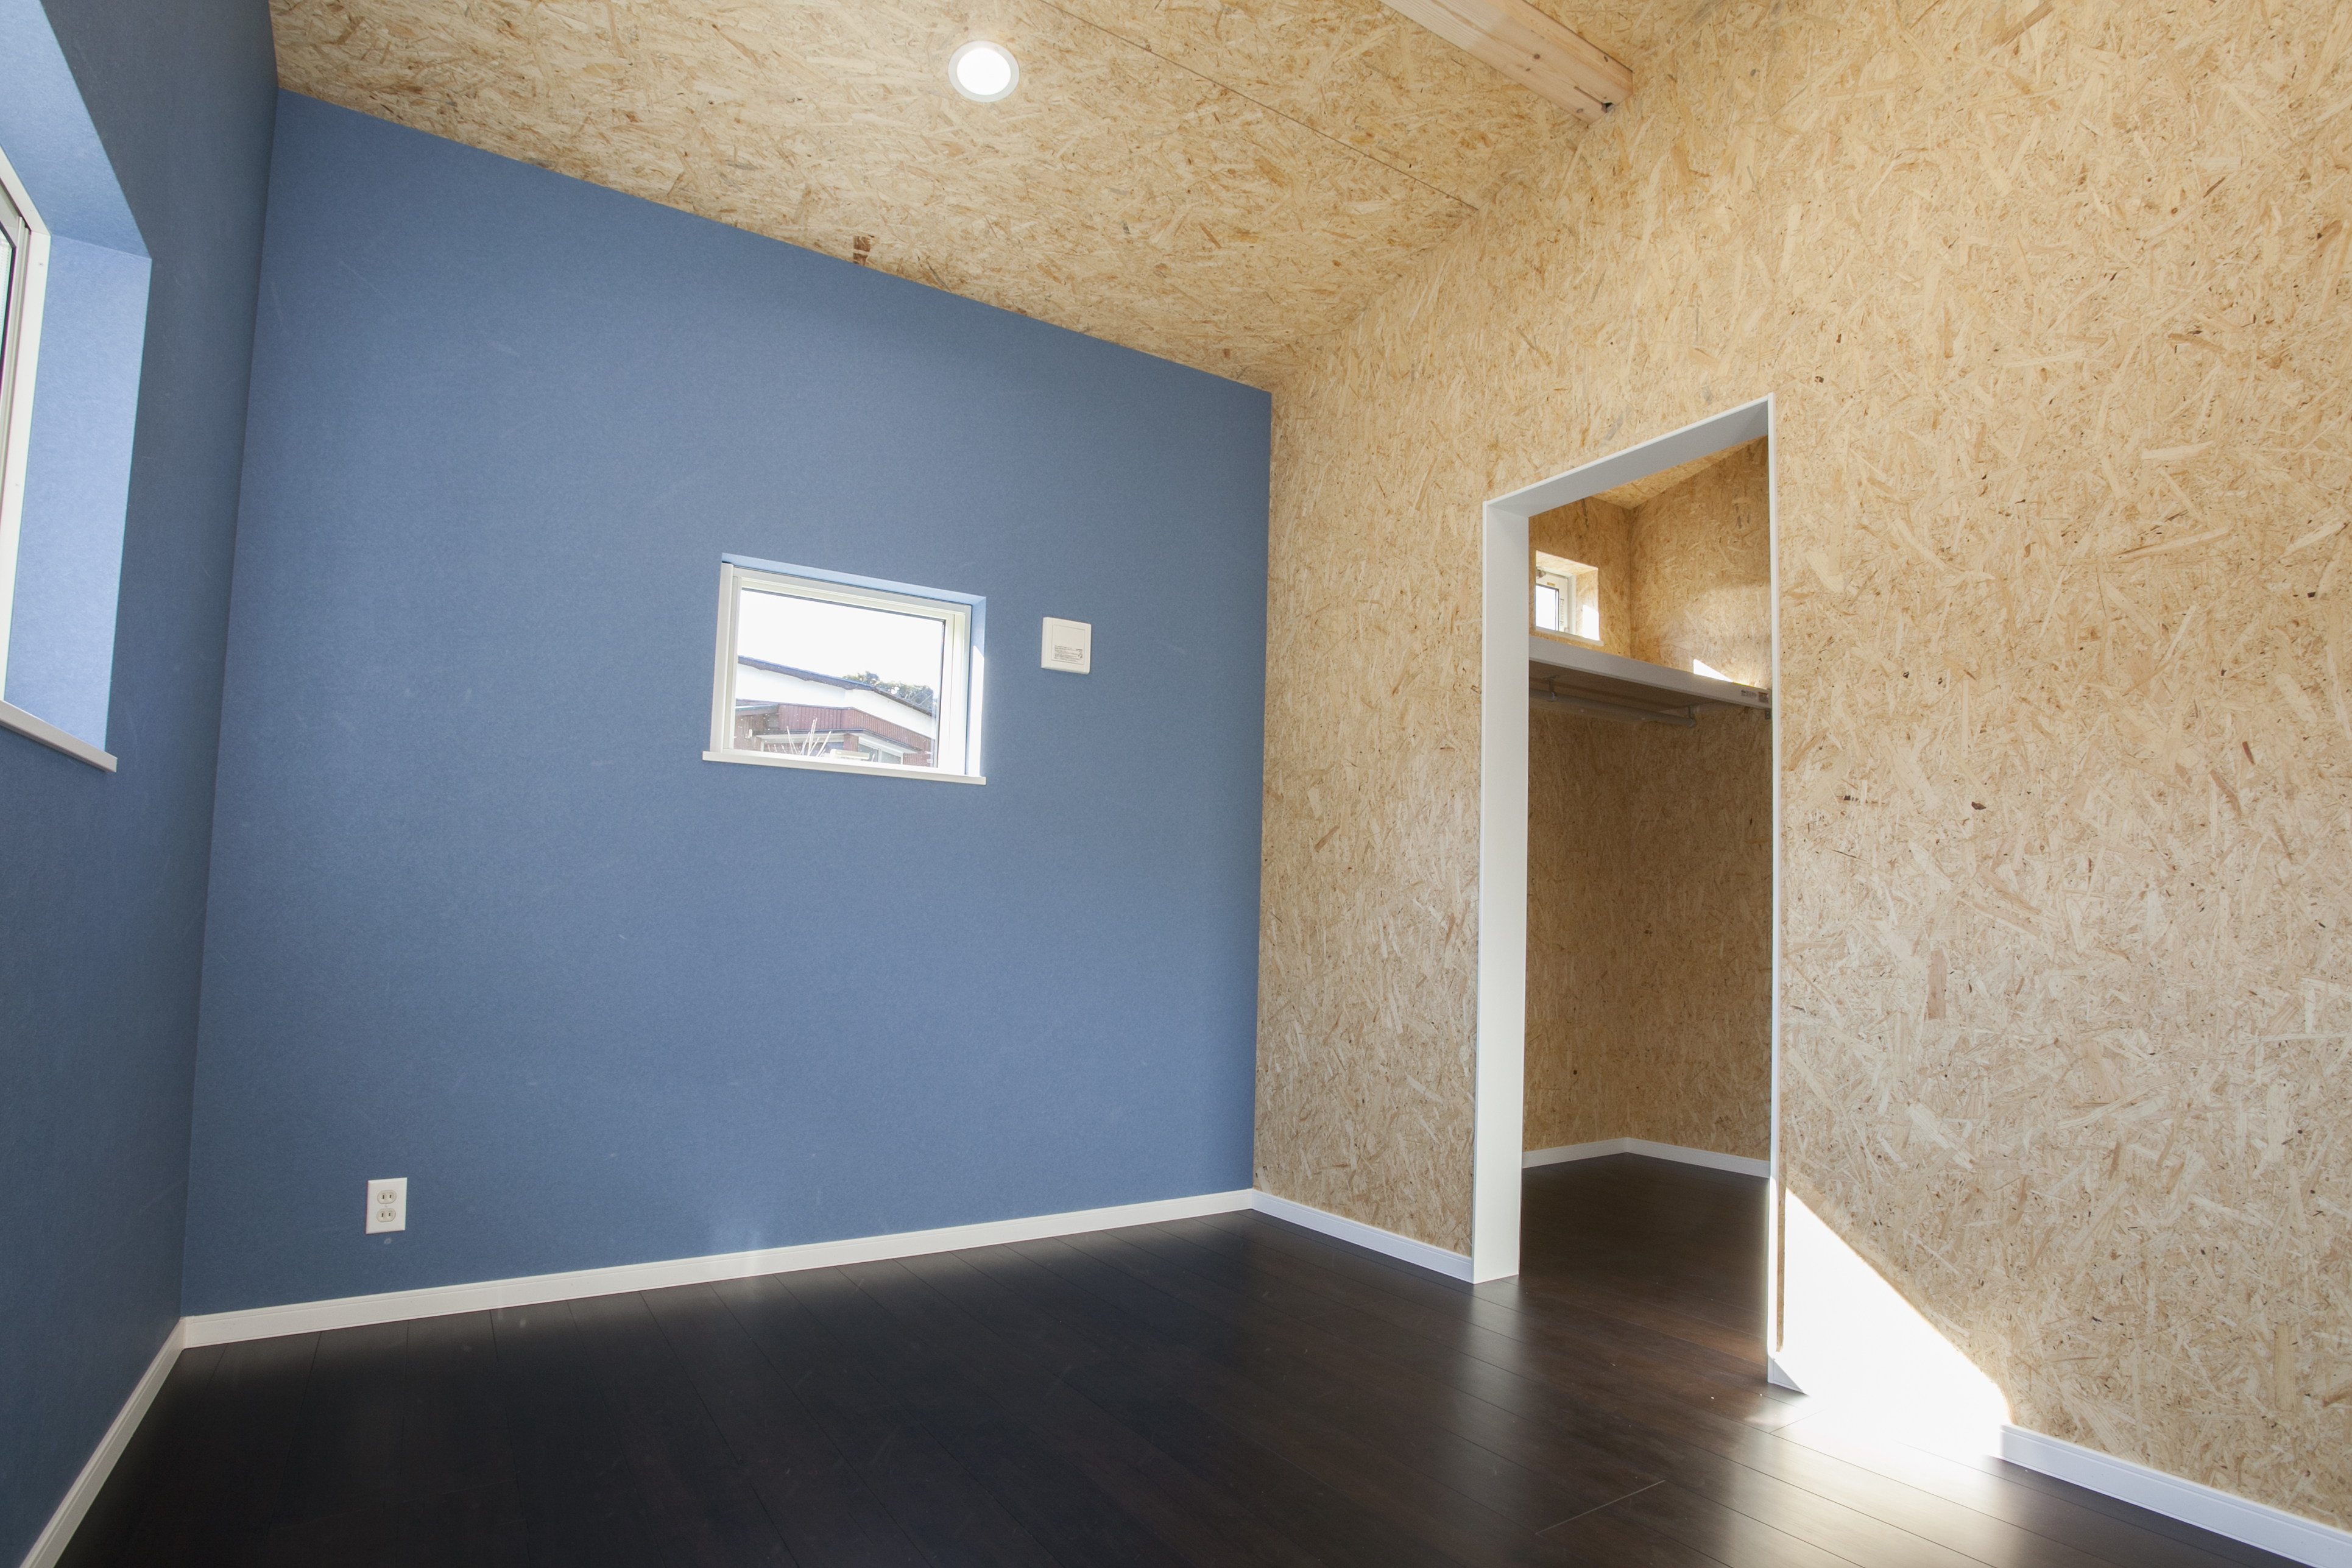 ブルーの壁紙がスタイリッシュな自然素材をふんだんに使用した寝室 Fevecasa フェブカーサ